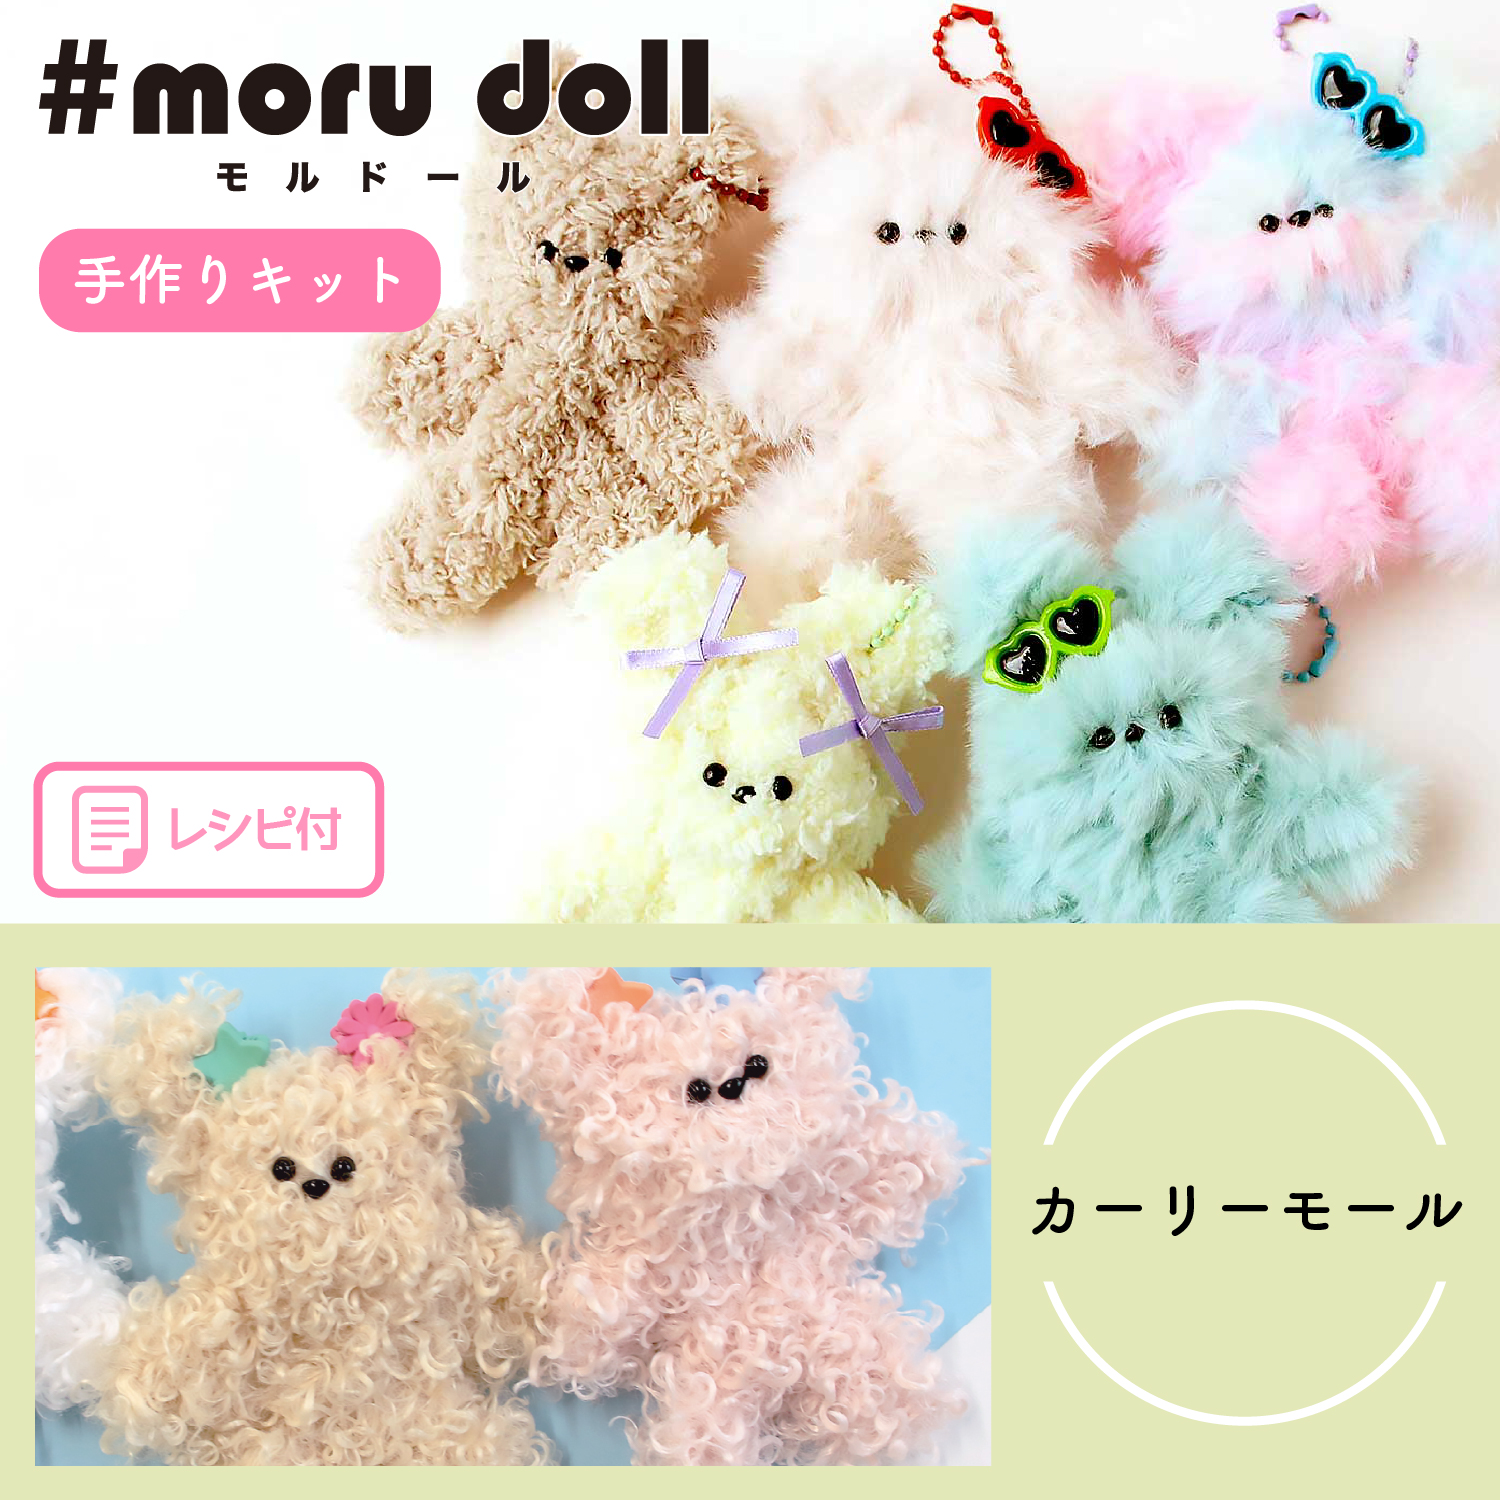 MOL-KIT モール人形 モールドール キット 定番ぬいぐるみタイプ カーリーモール (袋)